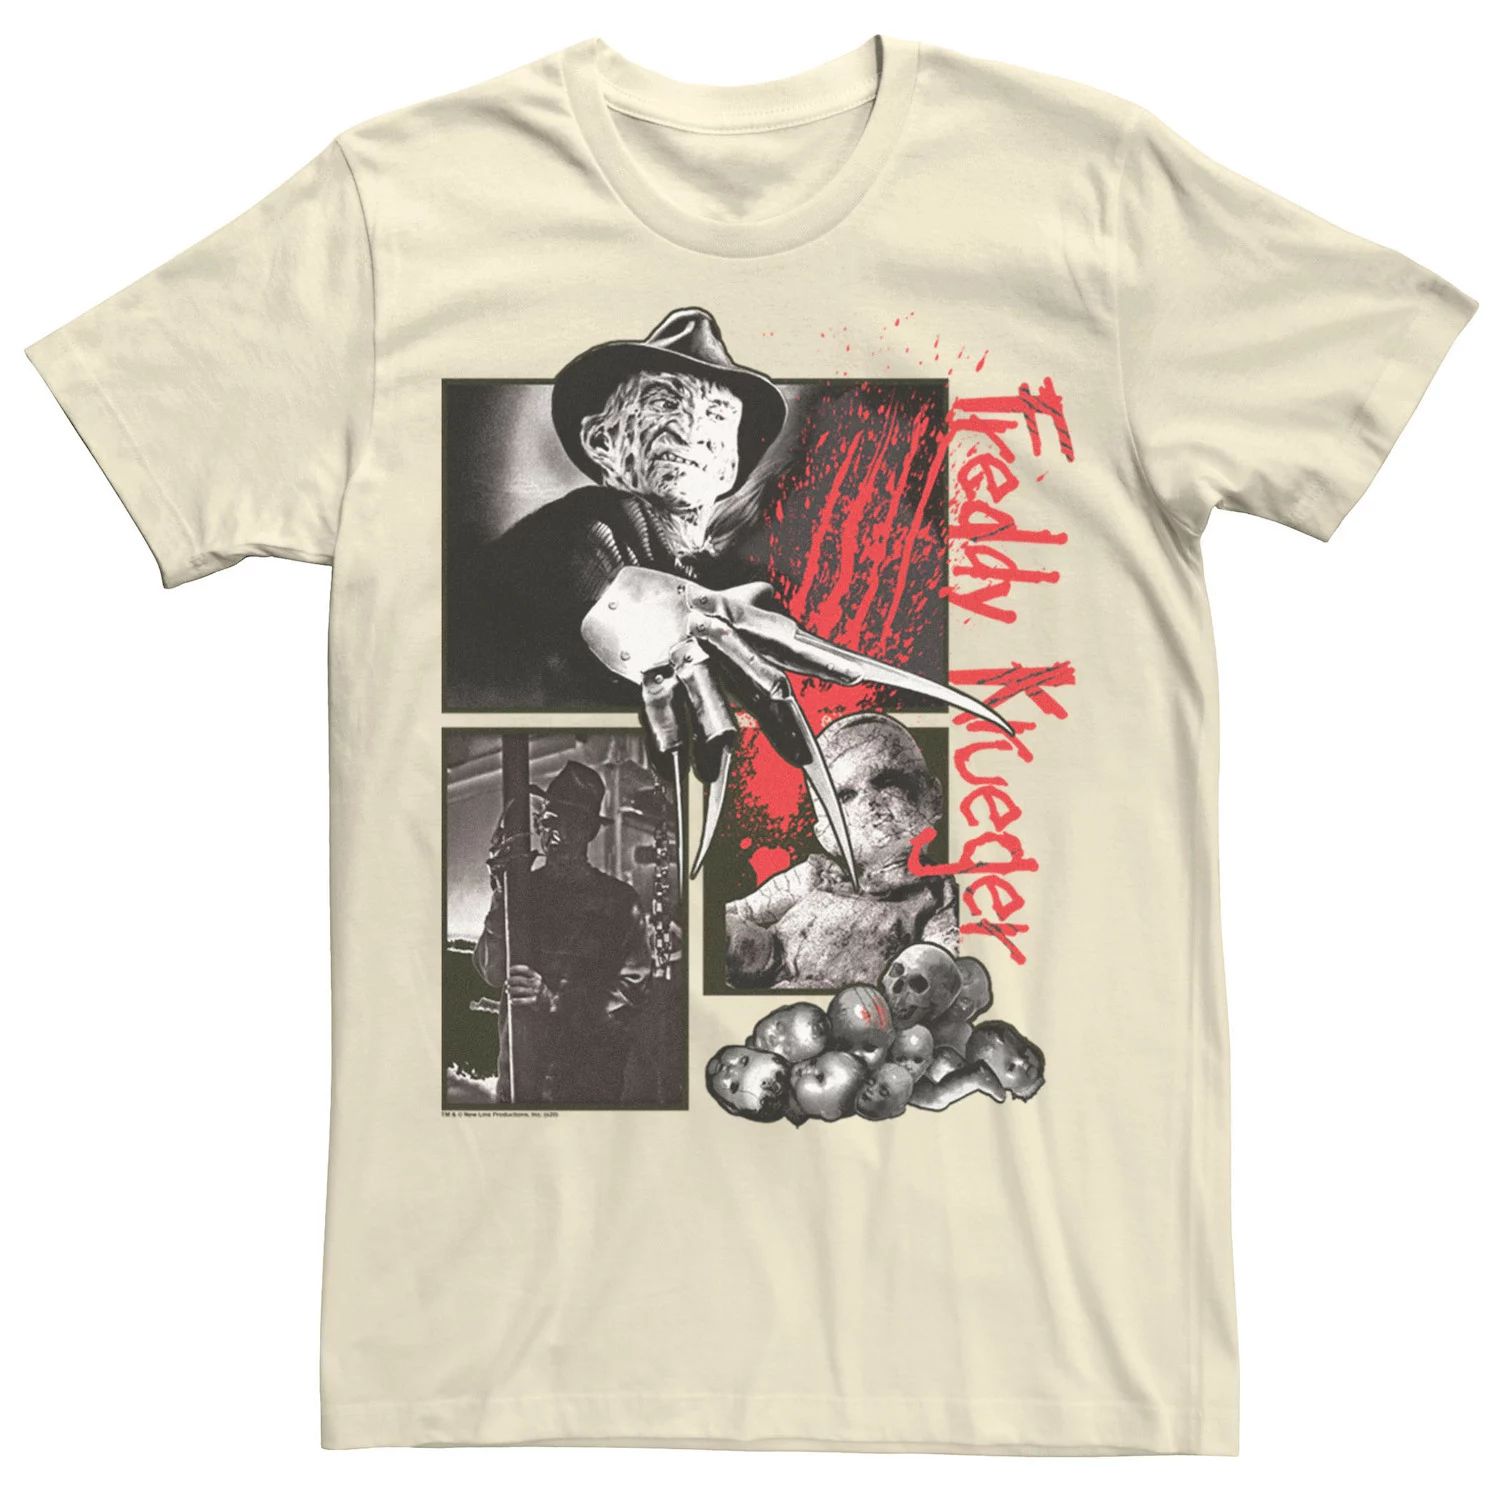 Мужская футболка с плакатом «Кошмар на улице Вязов» Фредди Licensed Character